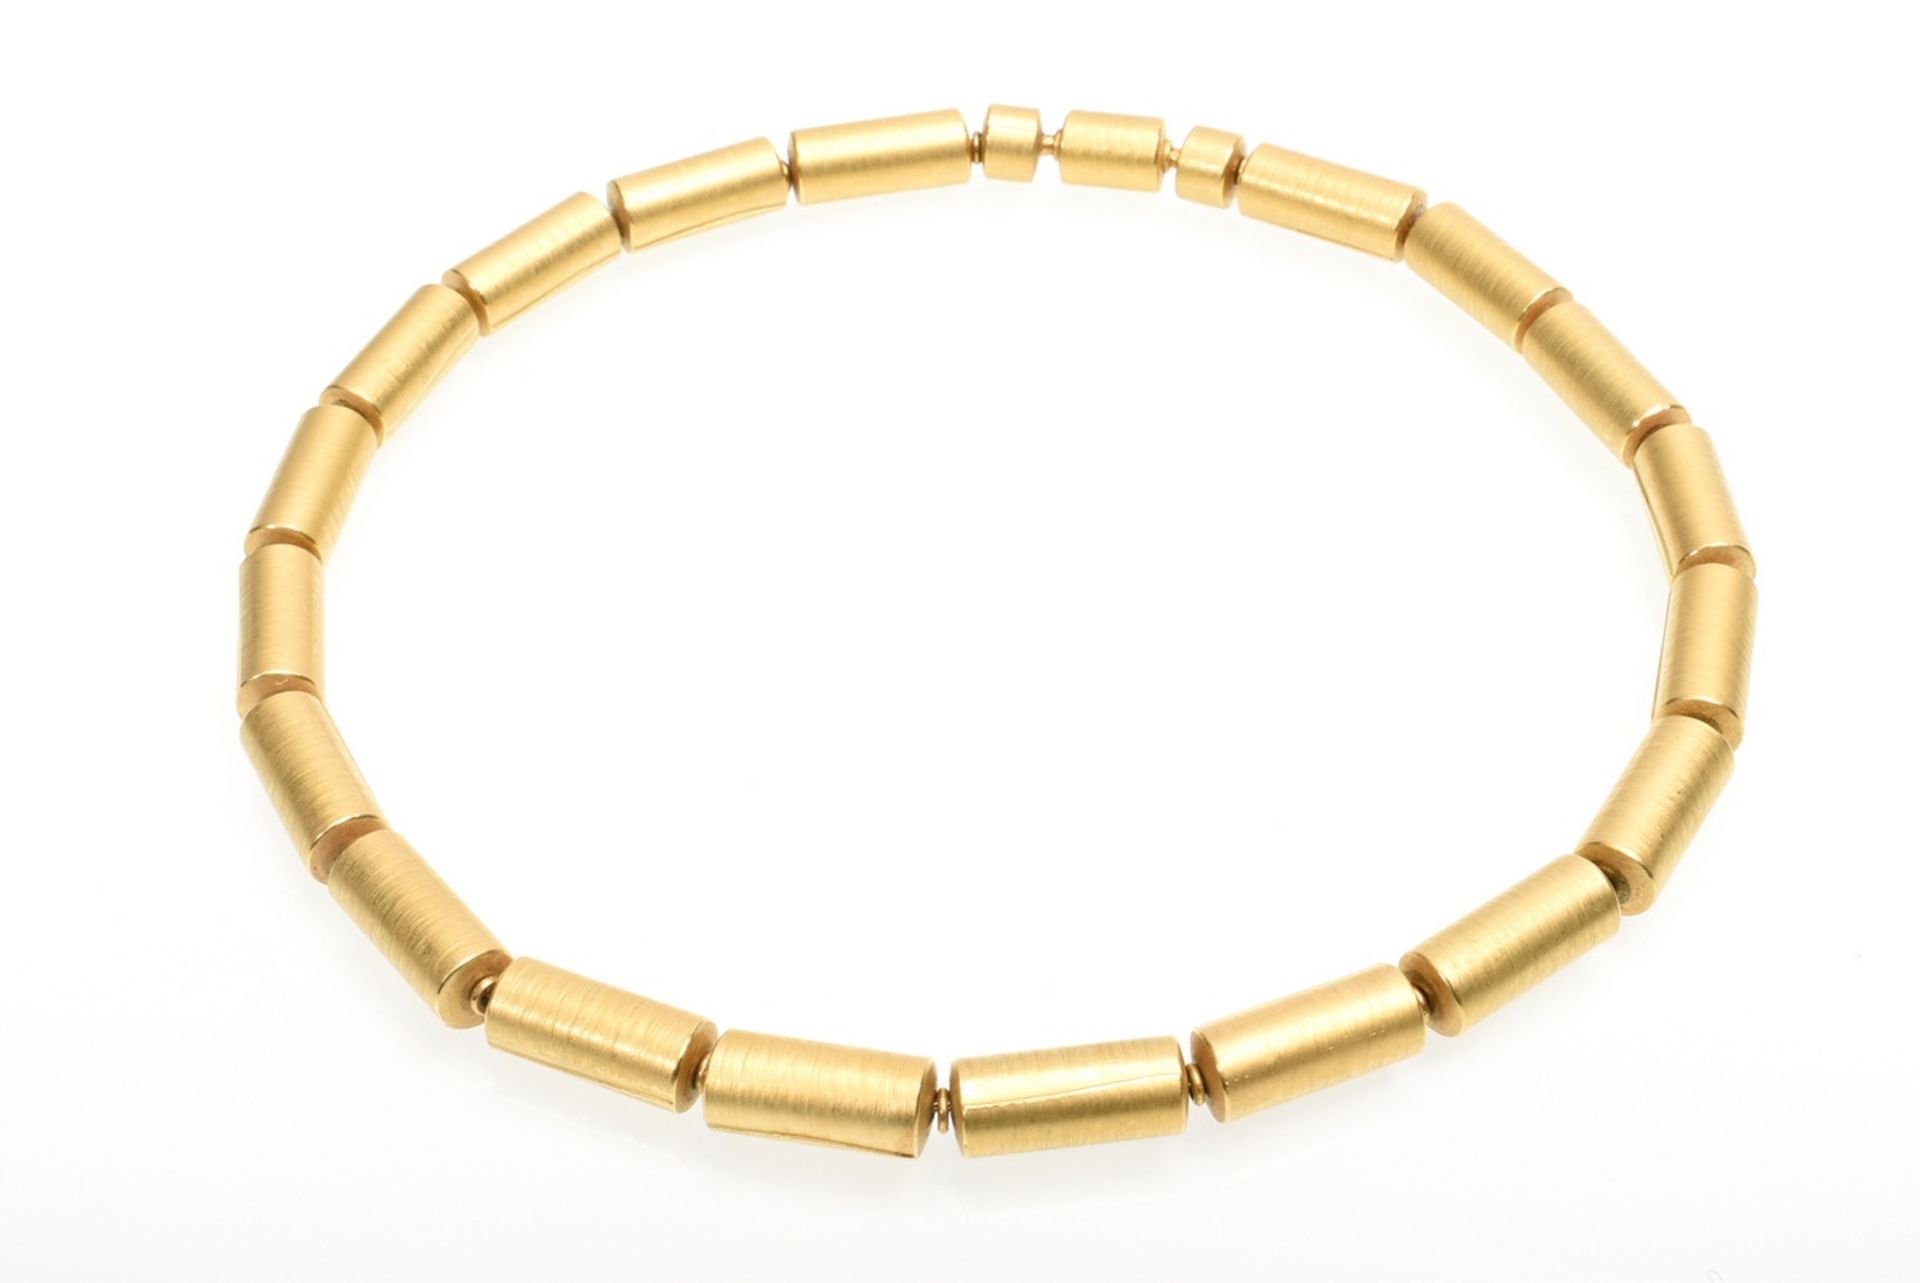 4 pieces avant-garde GG 900 tube necklace (68,8g, l. 44cm) with 3 different clasps: rutile quartz p - Image 4 of 11